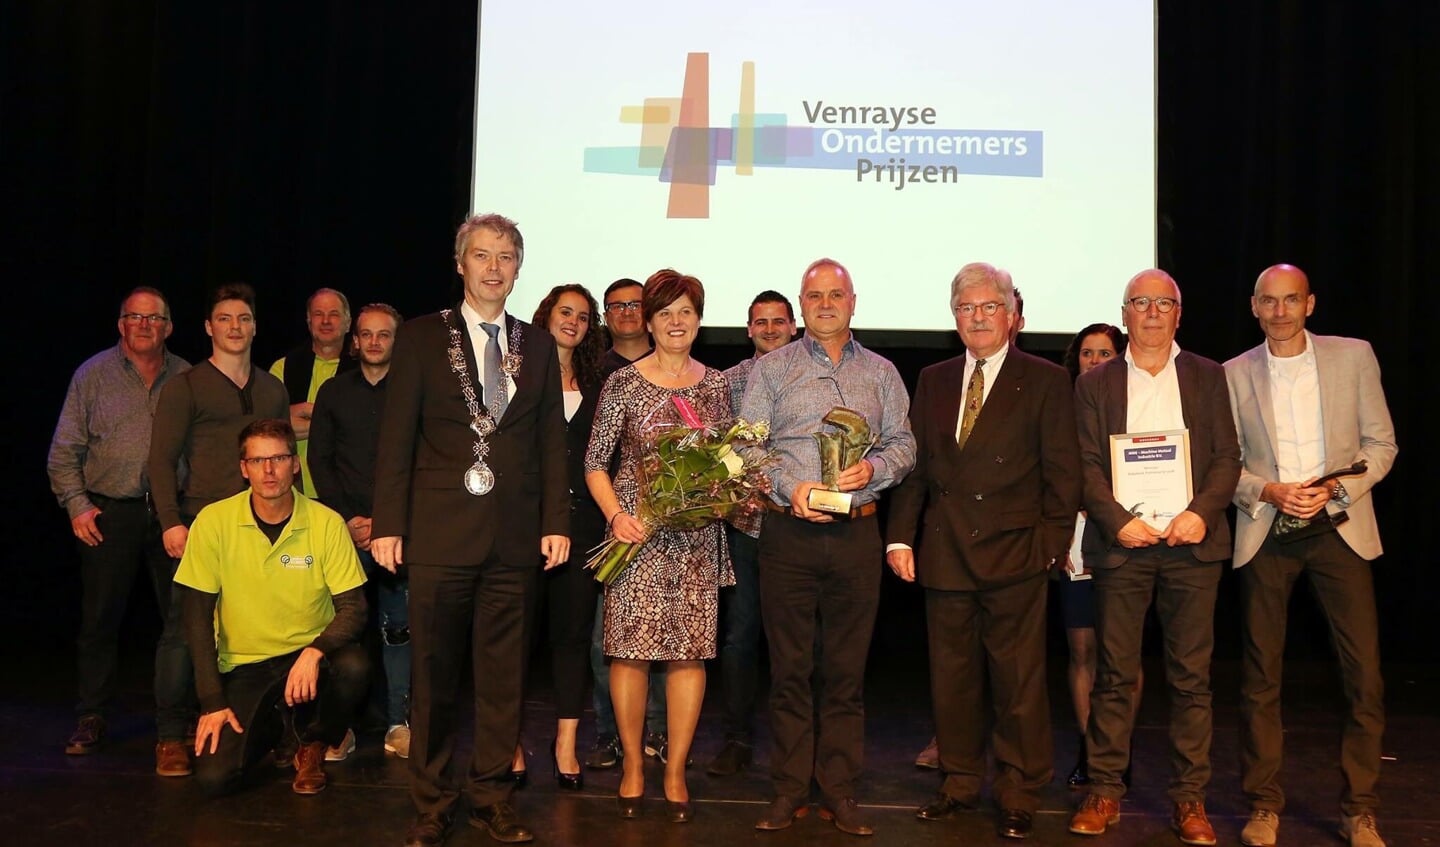 De trotse winnaars samen met burgemeester en jury op de foto. Foto: Marcel Hakvoort. 